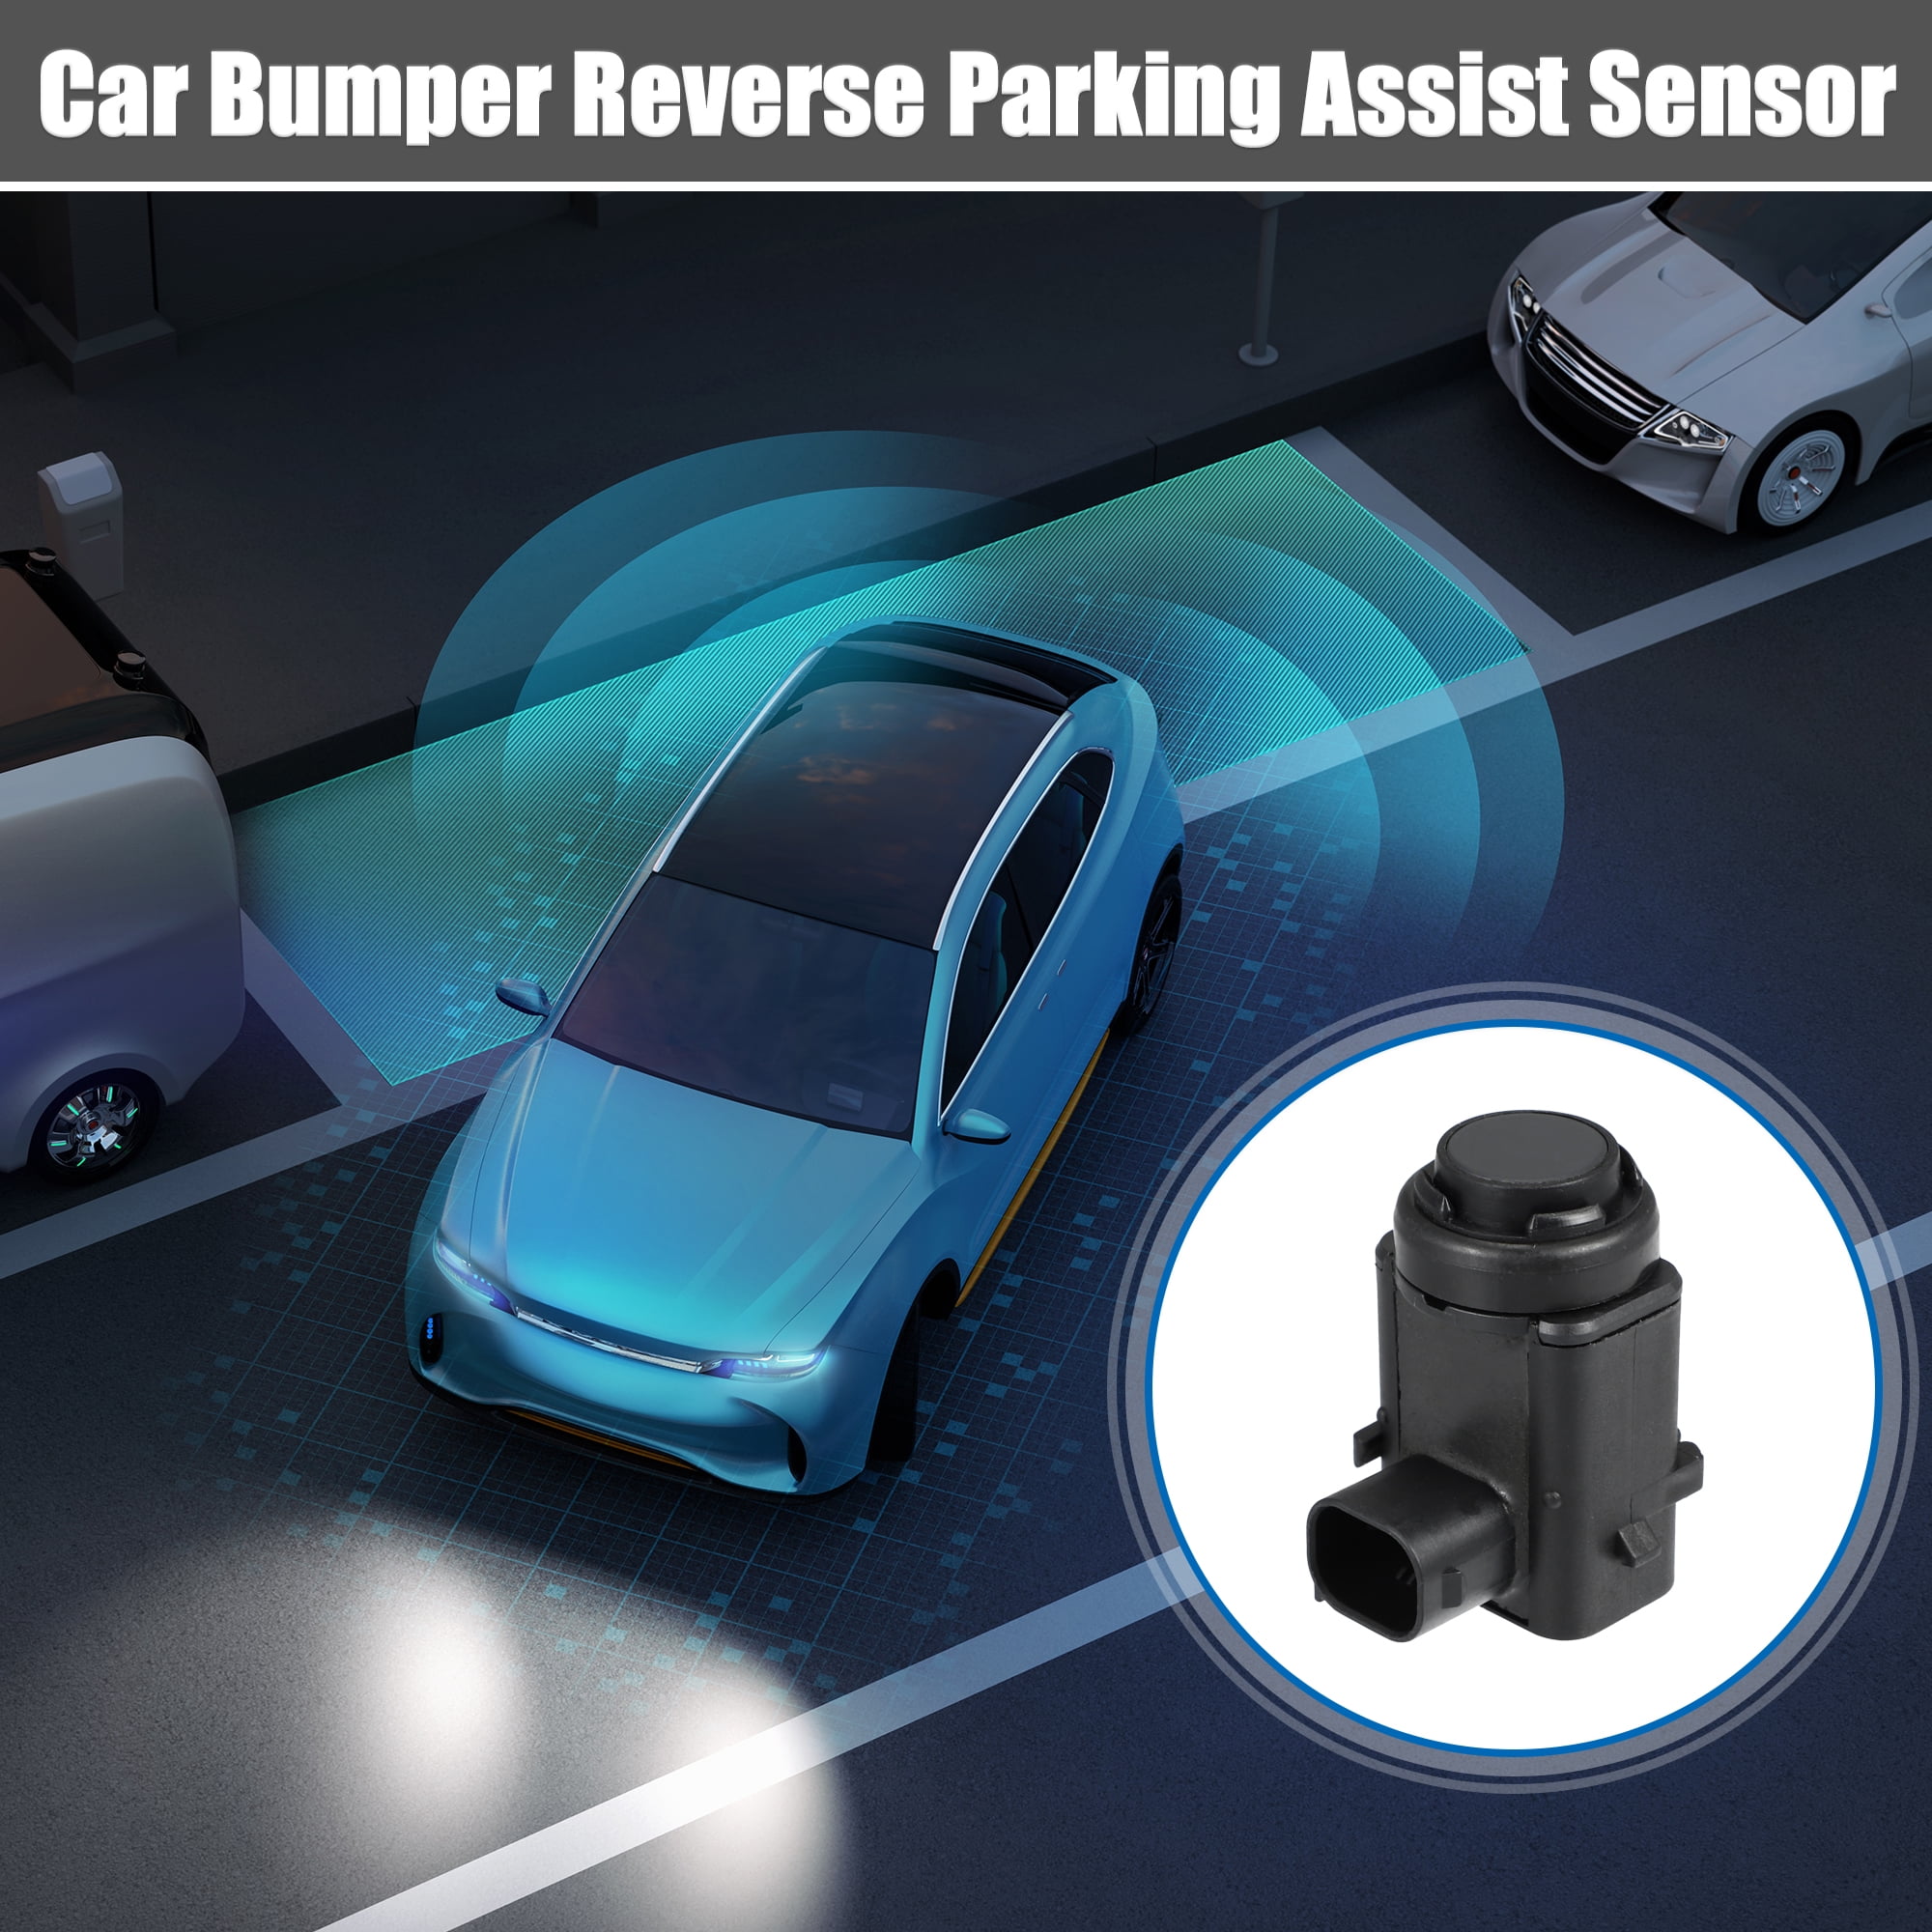 Parking Sensor PDC Parksensor Backup Reverse Parking Assist Sensor